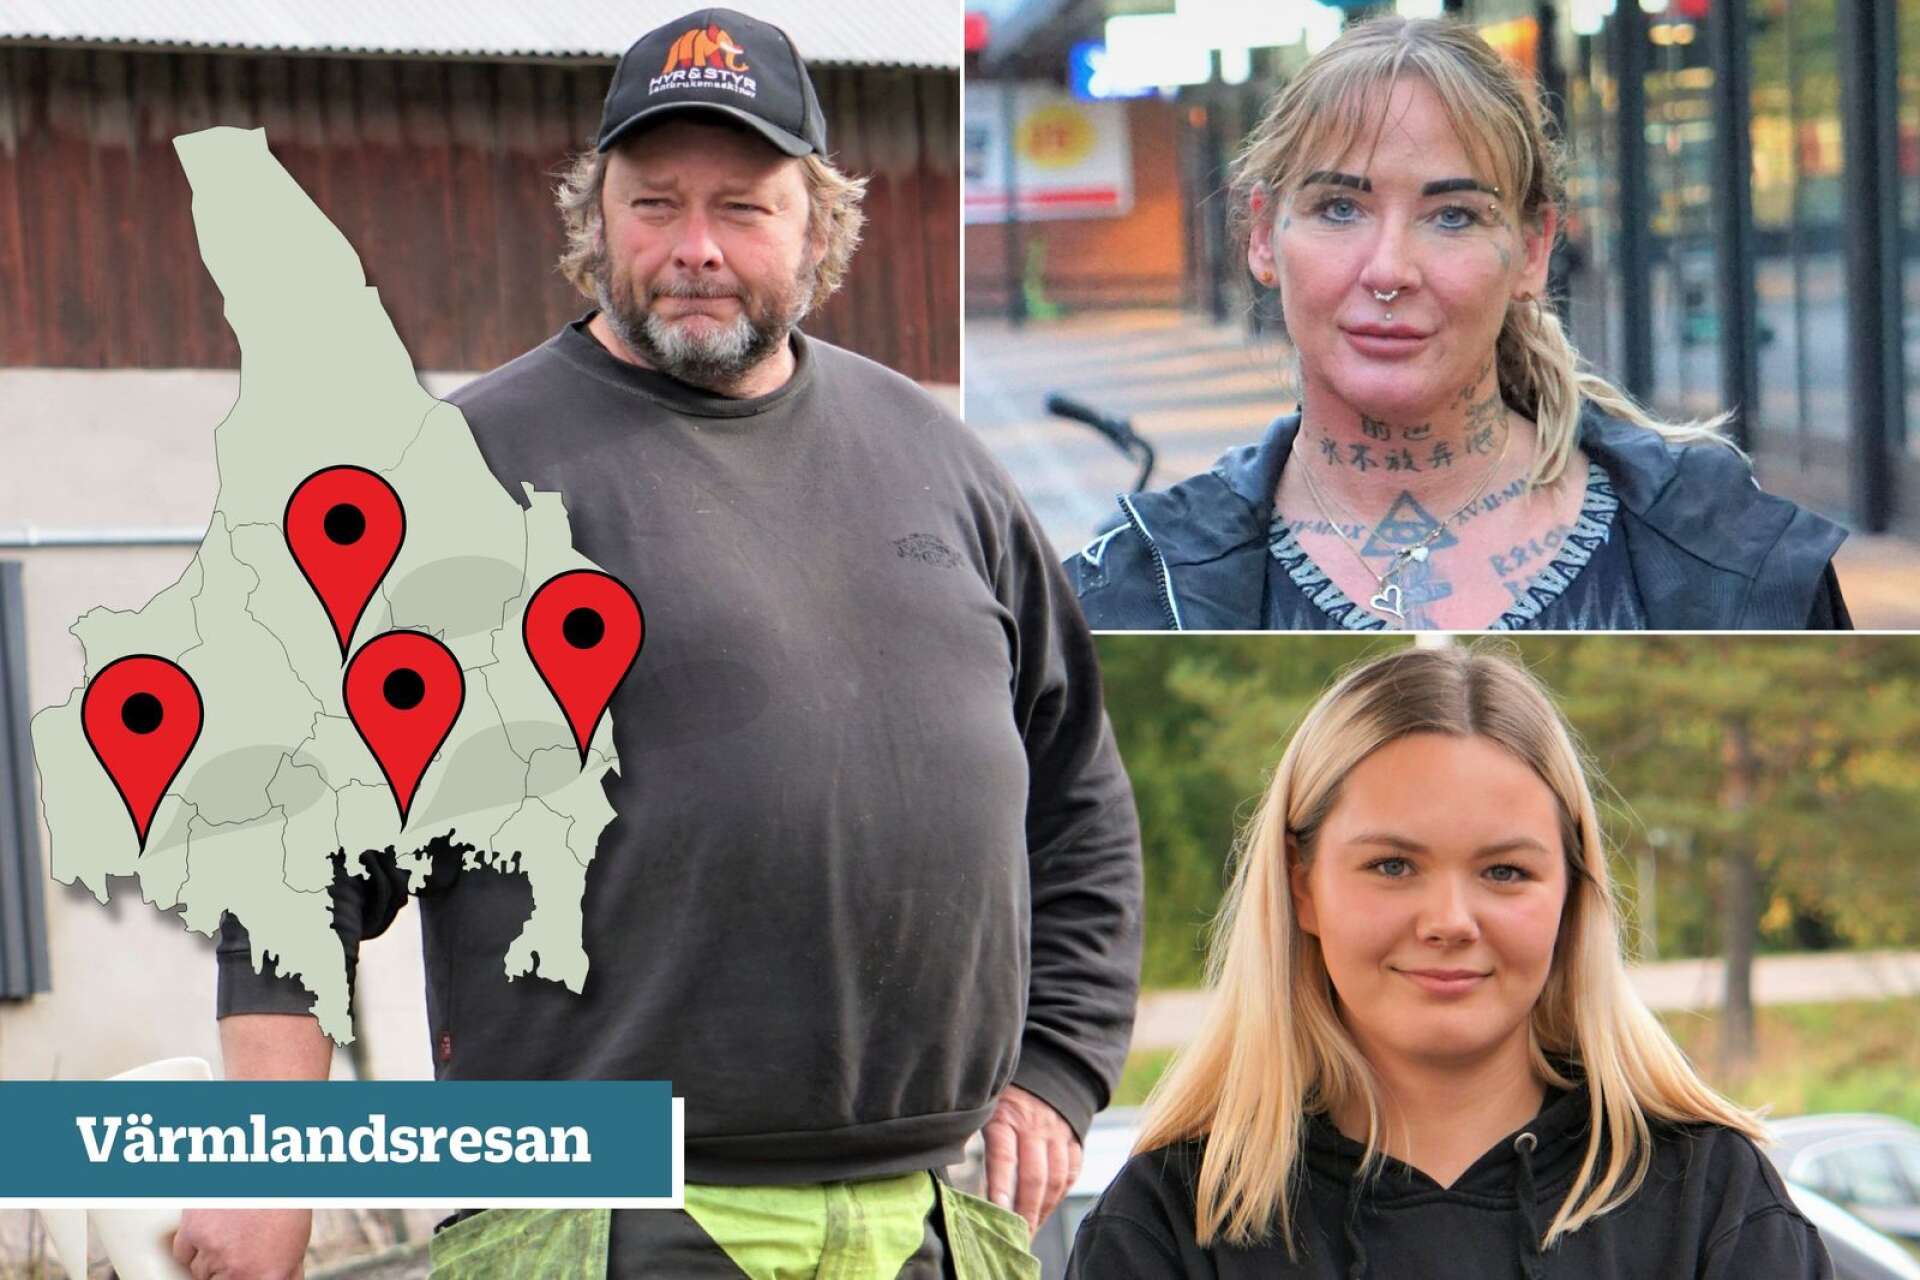 NWT har åkt från Kyrksten i öst till Sillerud i väst för att prata med gymnasiestudenter, lantbrukare, fabriksarbetare och pensionärer om valresultatet i en ny Värmlandsresa. 